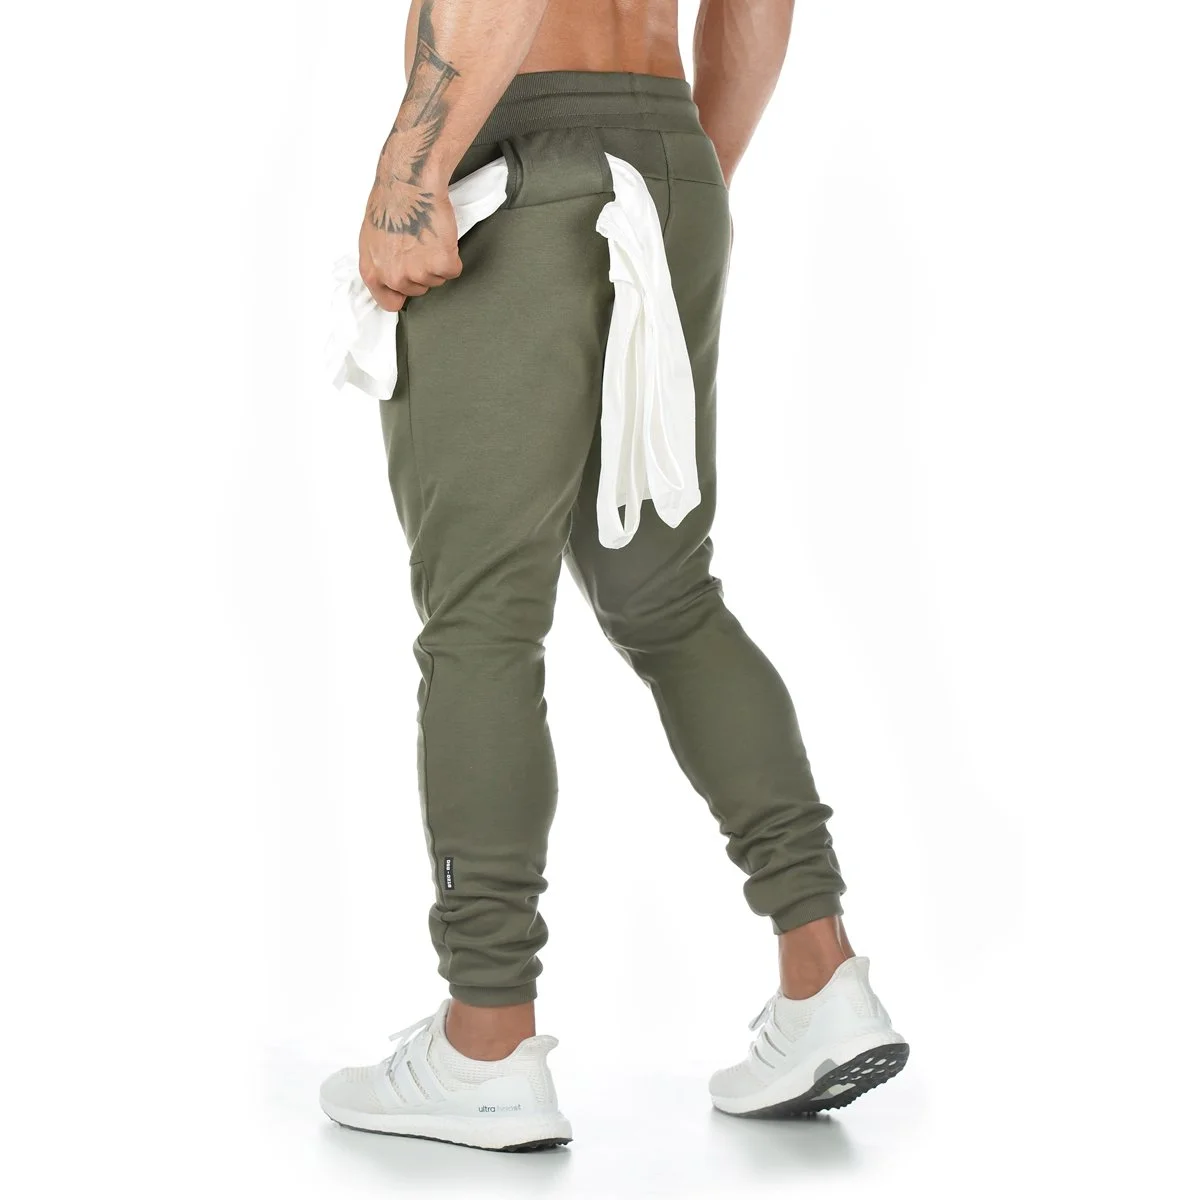 Новые хлопковые штаны для бега, мужские спортивные Леггинсы, тренировочные штаны для бега для мужчин, леггинсы для бега, спортивные штаны - Цвет: Армейский зеленый